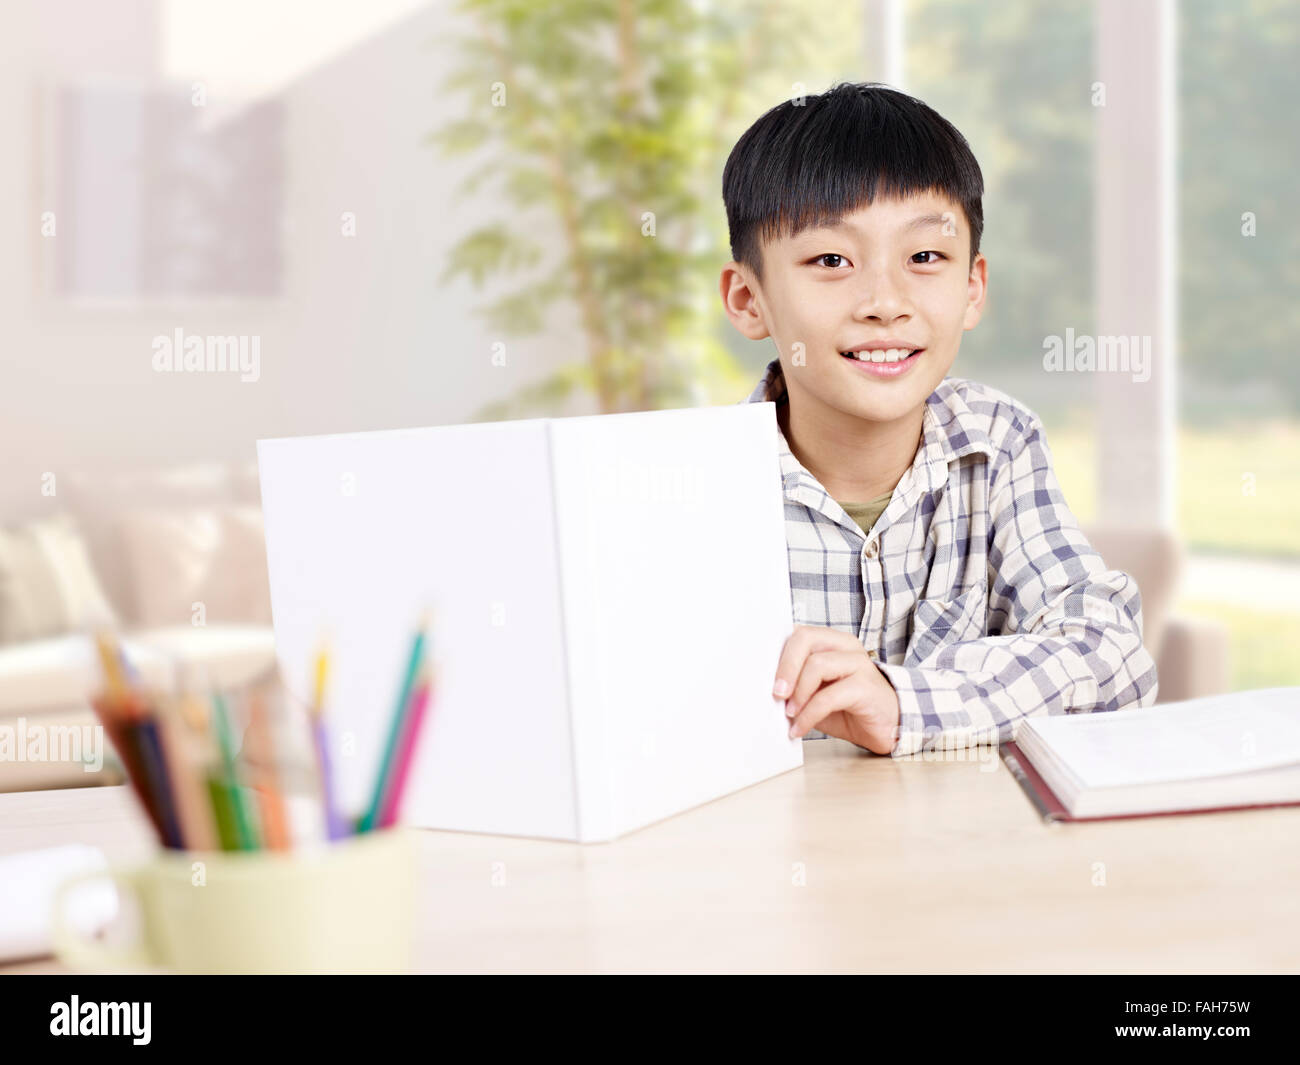 Accueil Portrait d'un écolier du primaire asiatique Banque D'Images